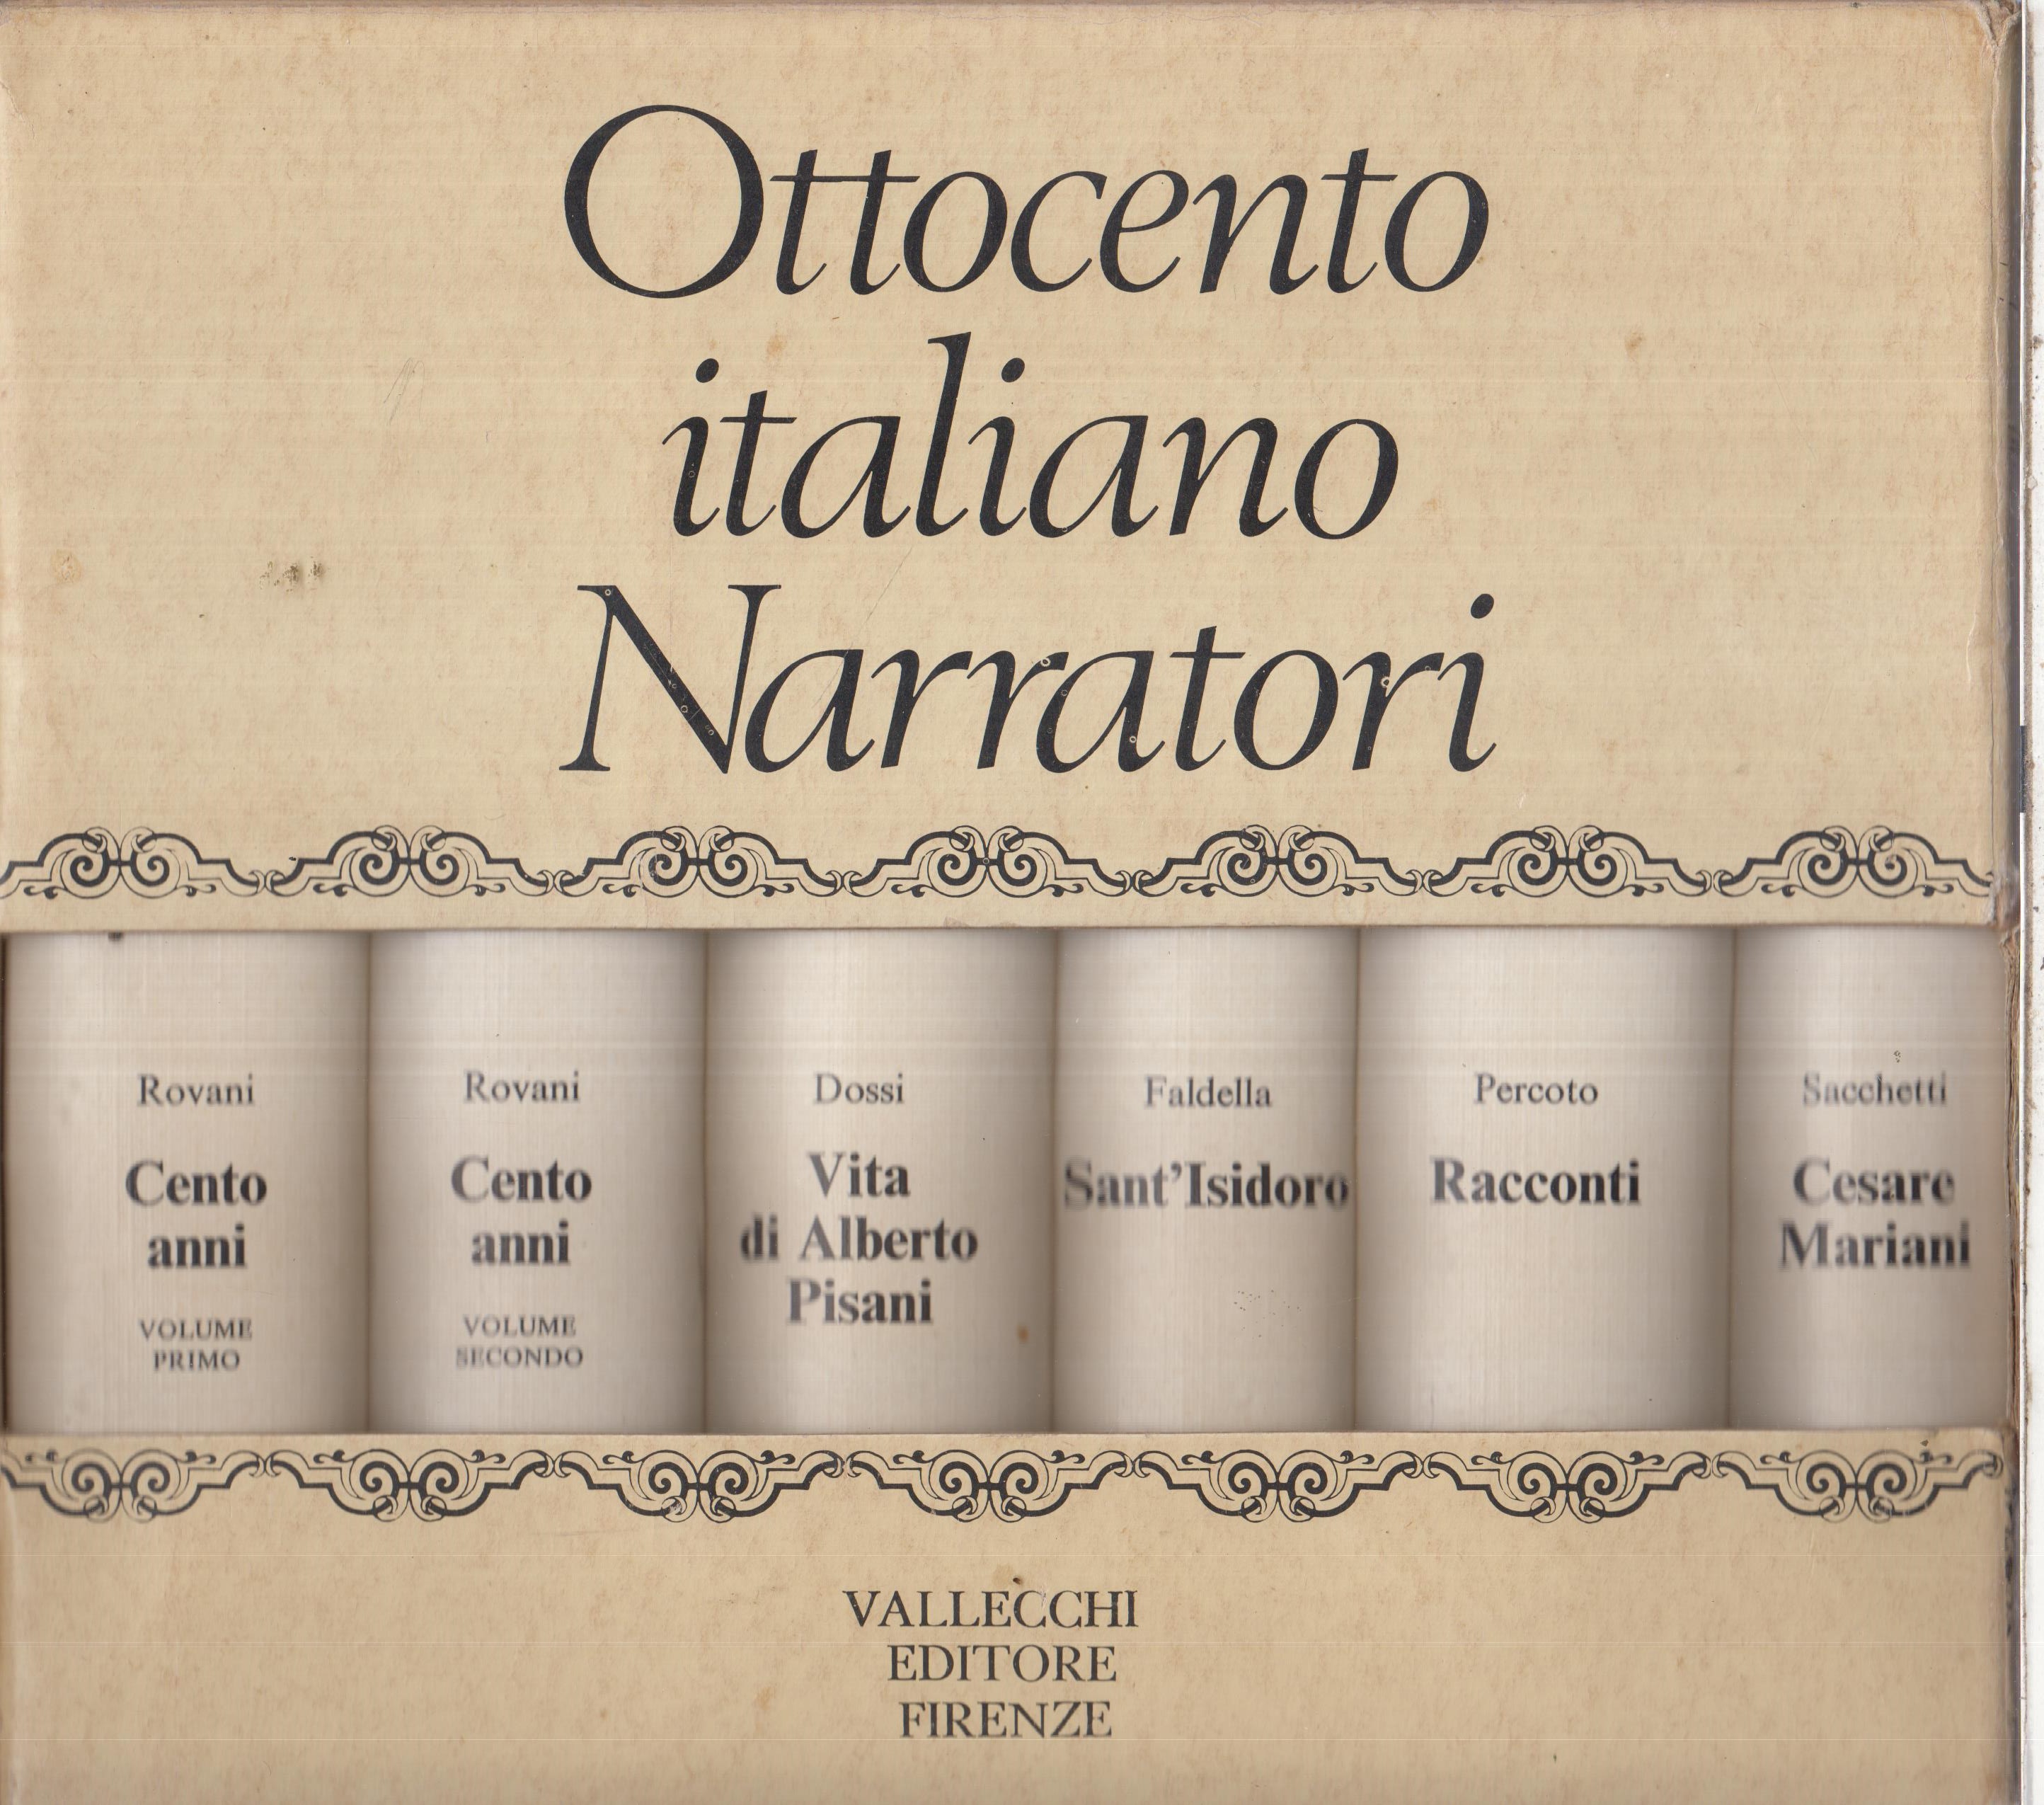 Ottocento italiano Narratori, VALLECCHI EDITORE FIRENZE, 1973